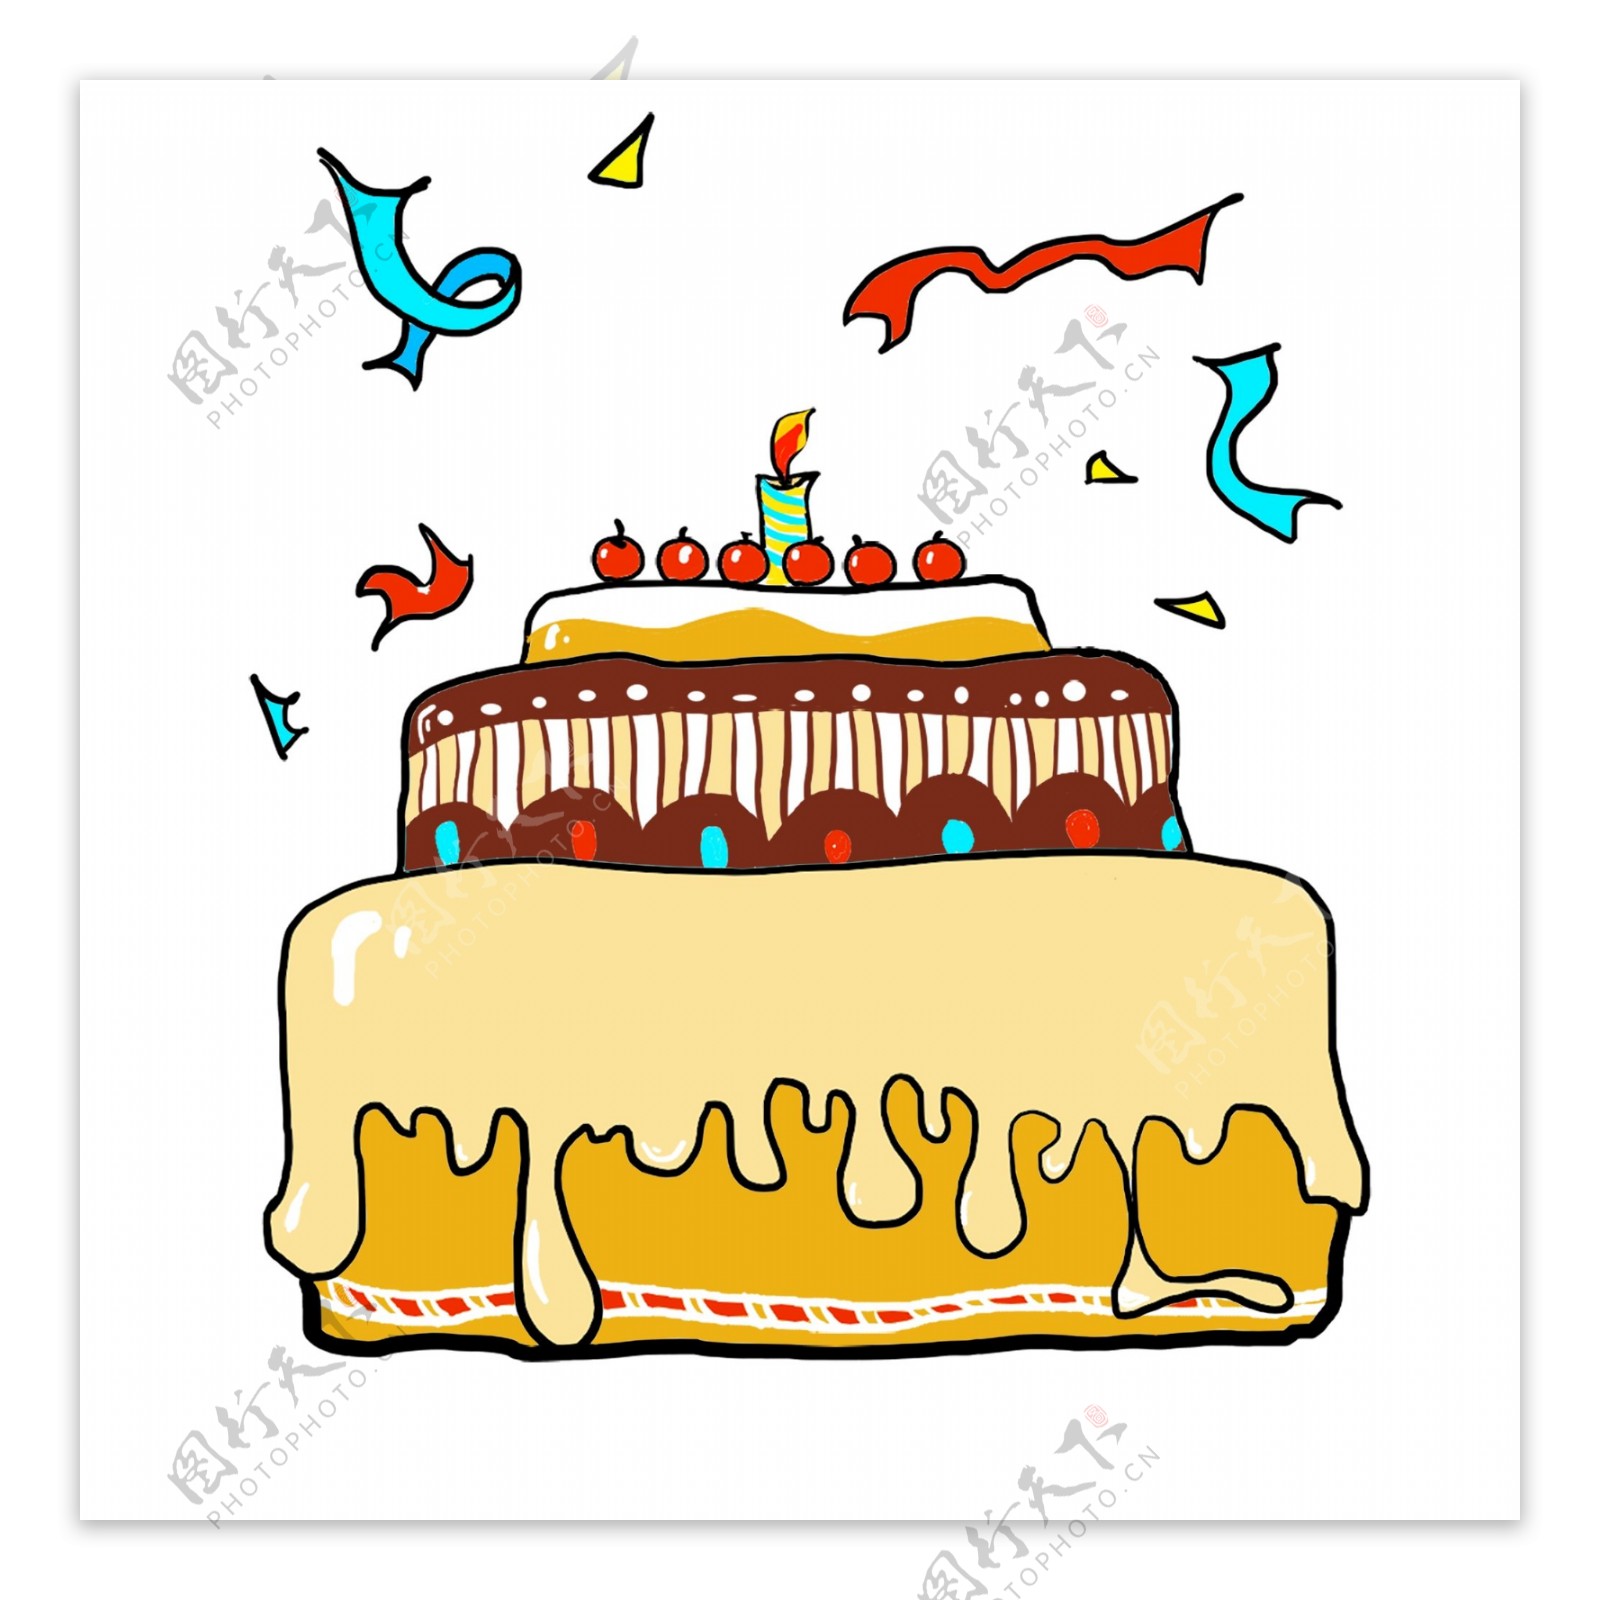 生日蛋糕生日礼物扁平化卡通